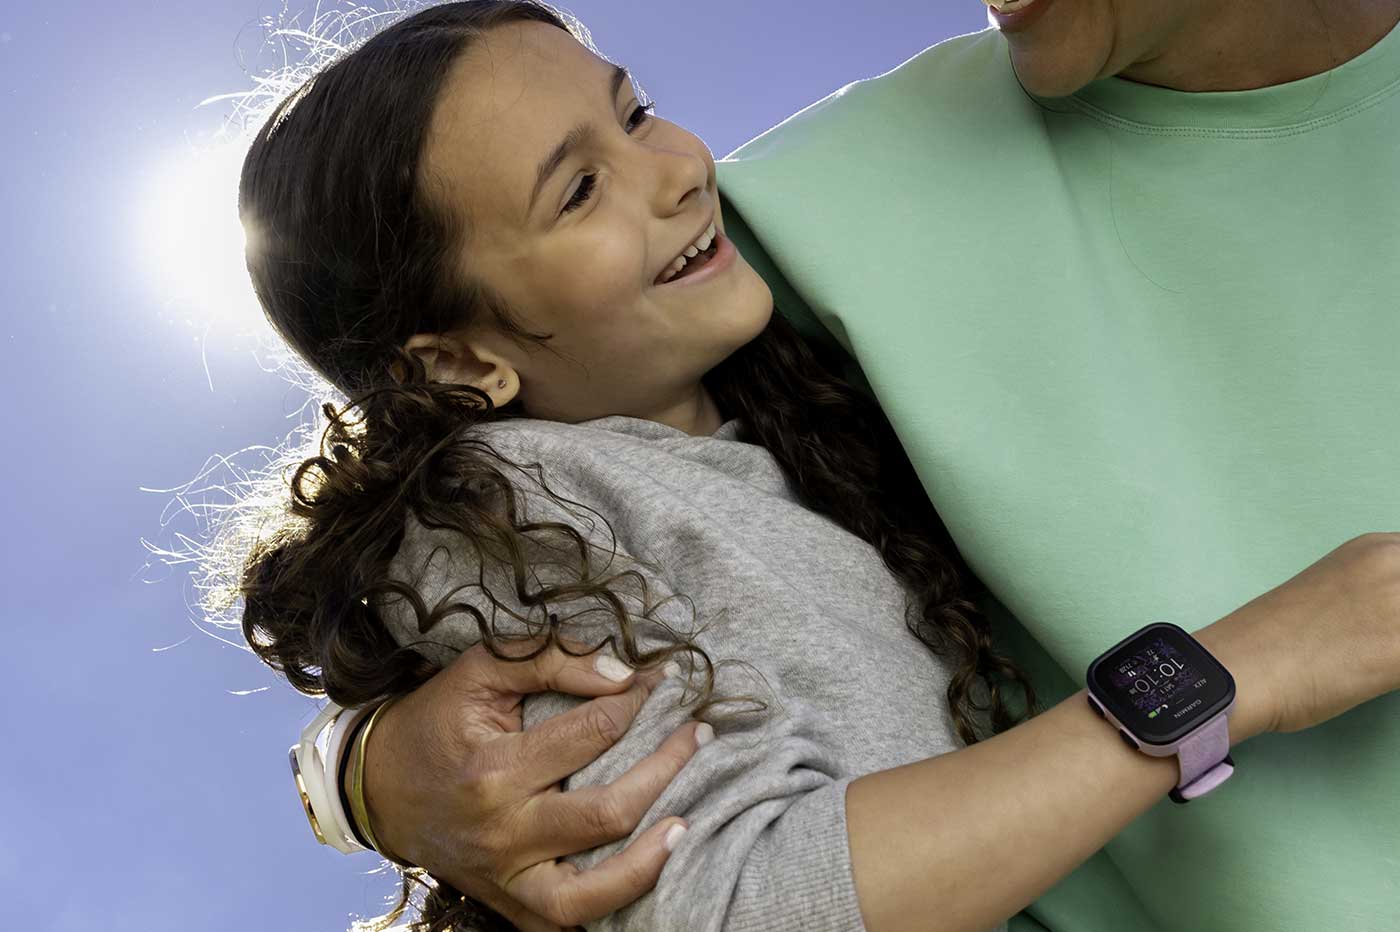 Garmin lance une montre connectée pour enfants, pour rassurer les